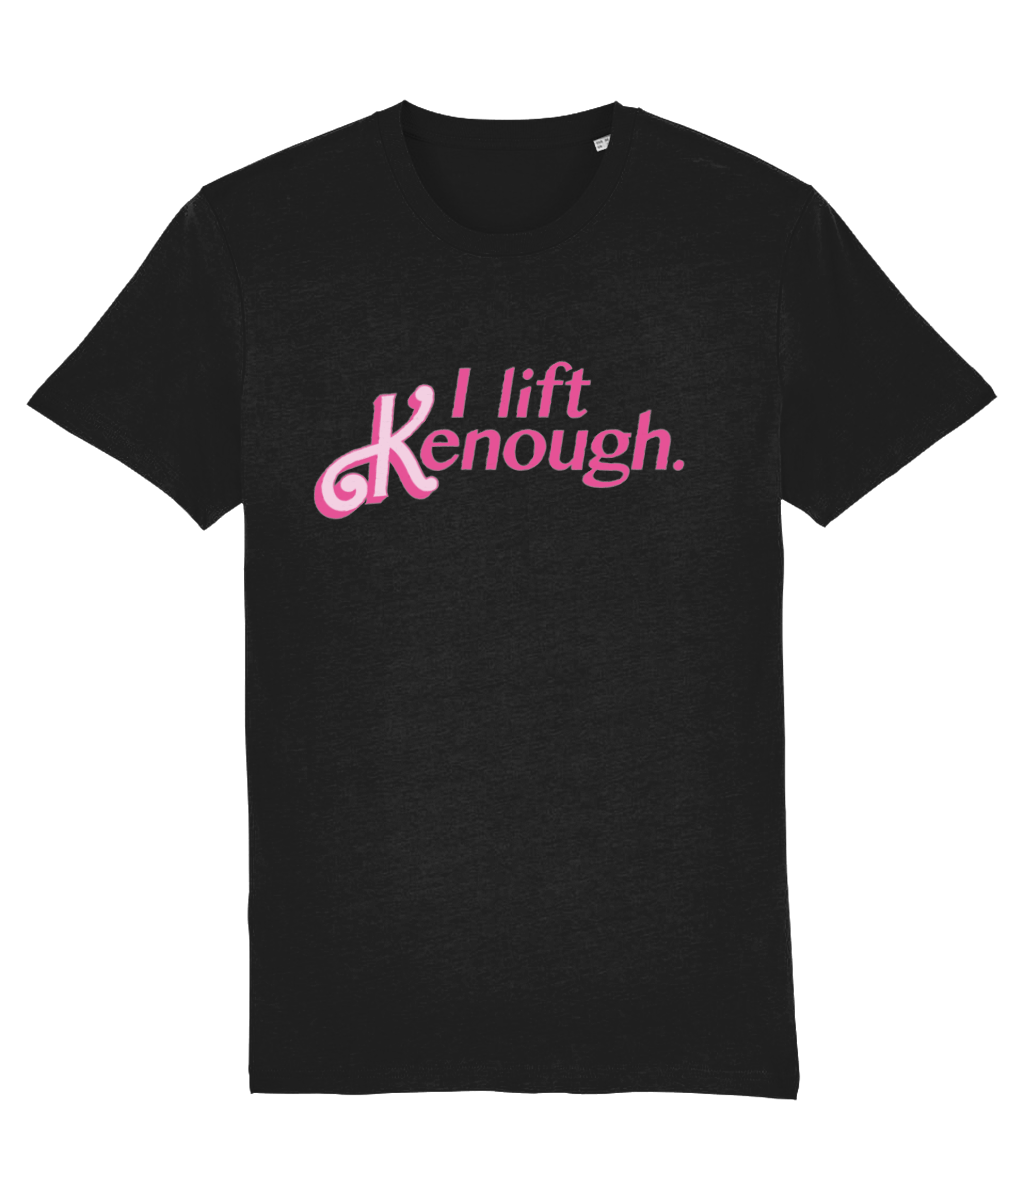 Lift Kenough t-shirt